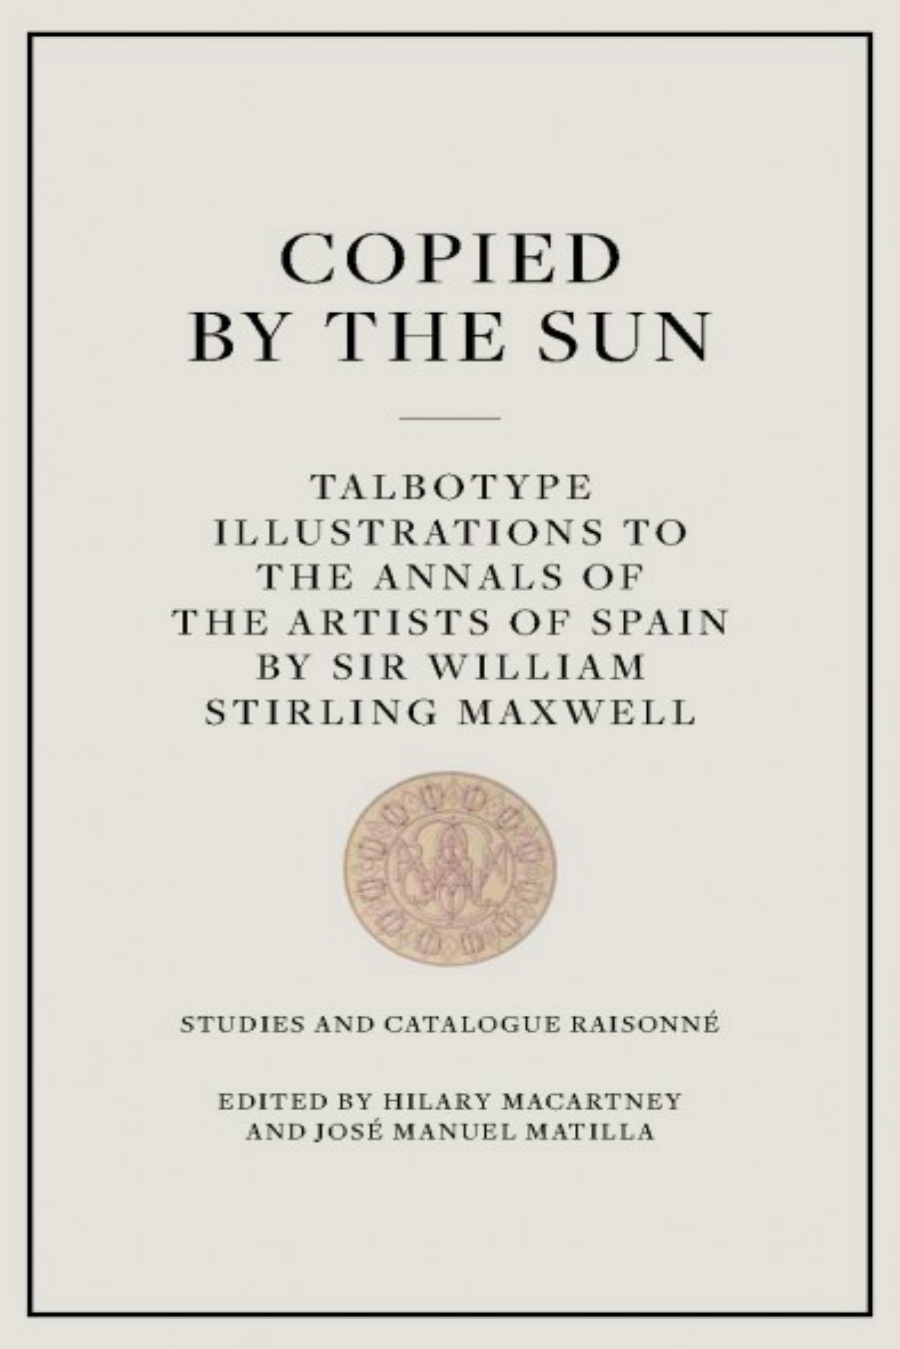 imagen 7 de ‘Copiado por el sol’, el primer libro de arte ilustrado con fotografías.